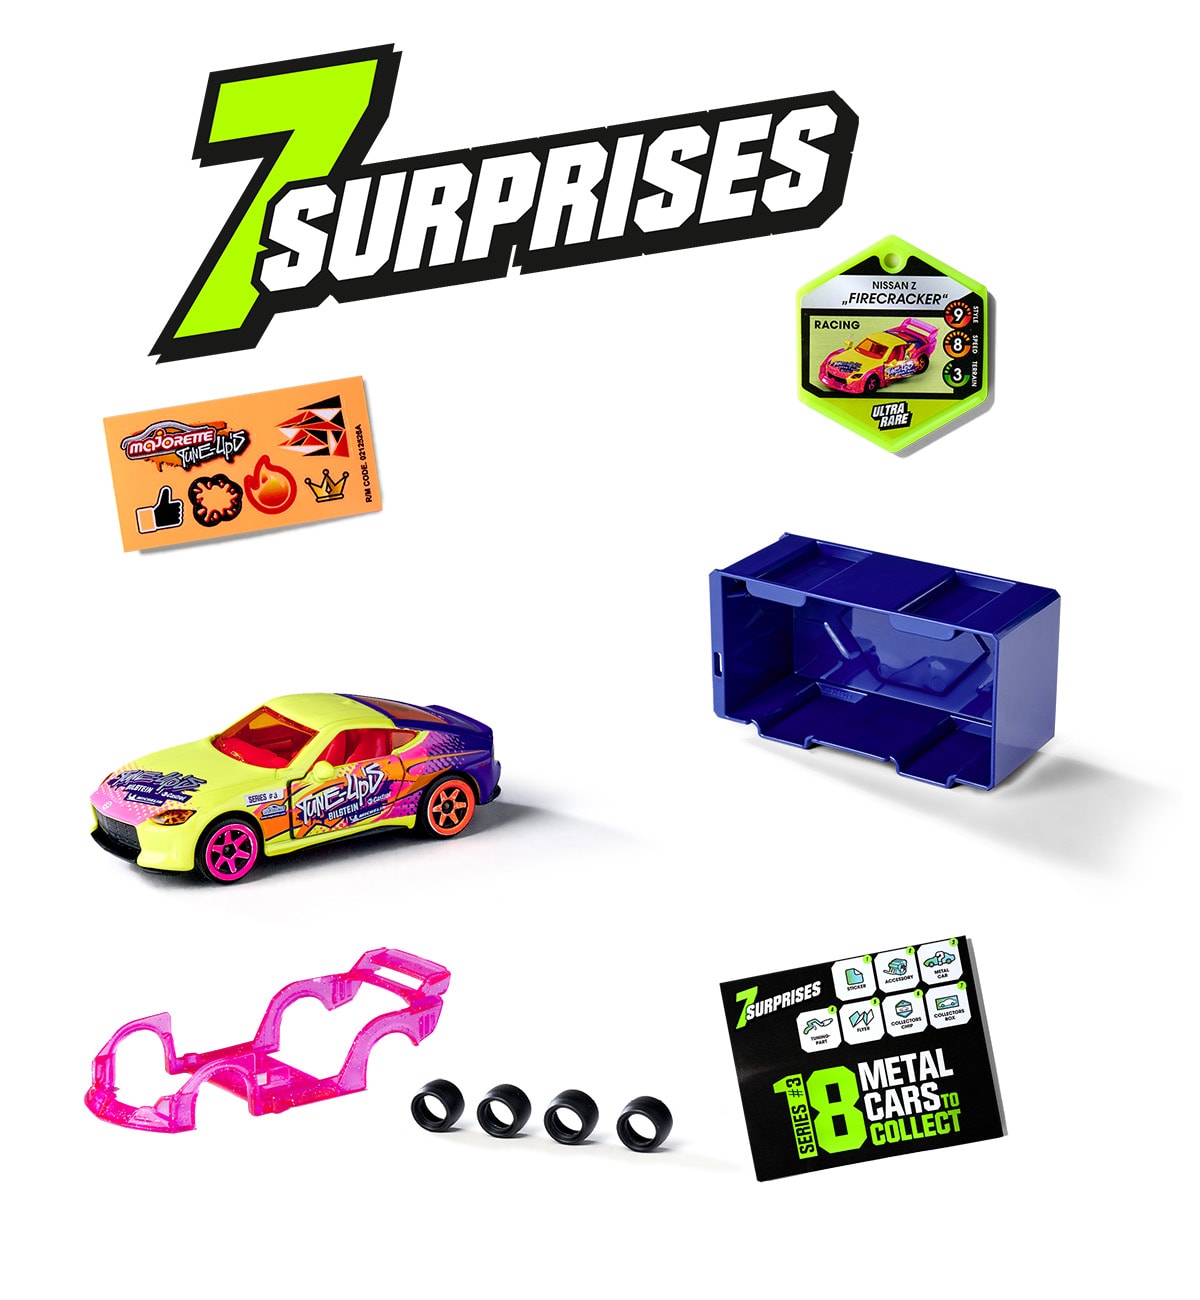 Trouvez Tune Ups Series 2 - Lot de 4 avec 28 surprises, 4 voitures